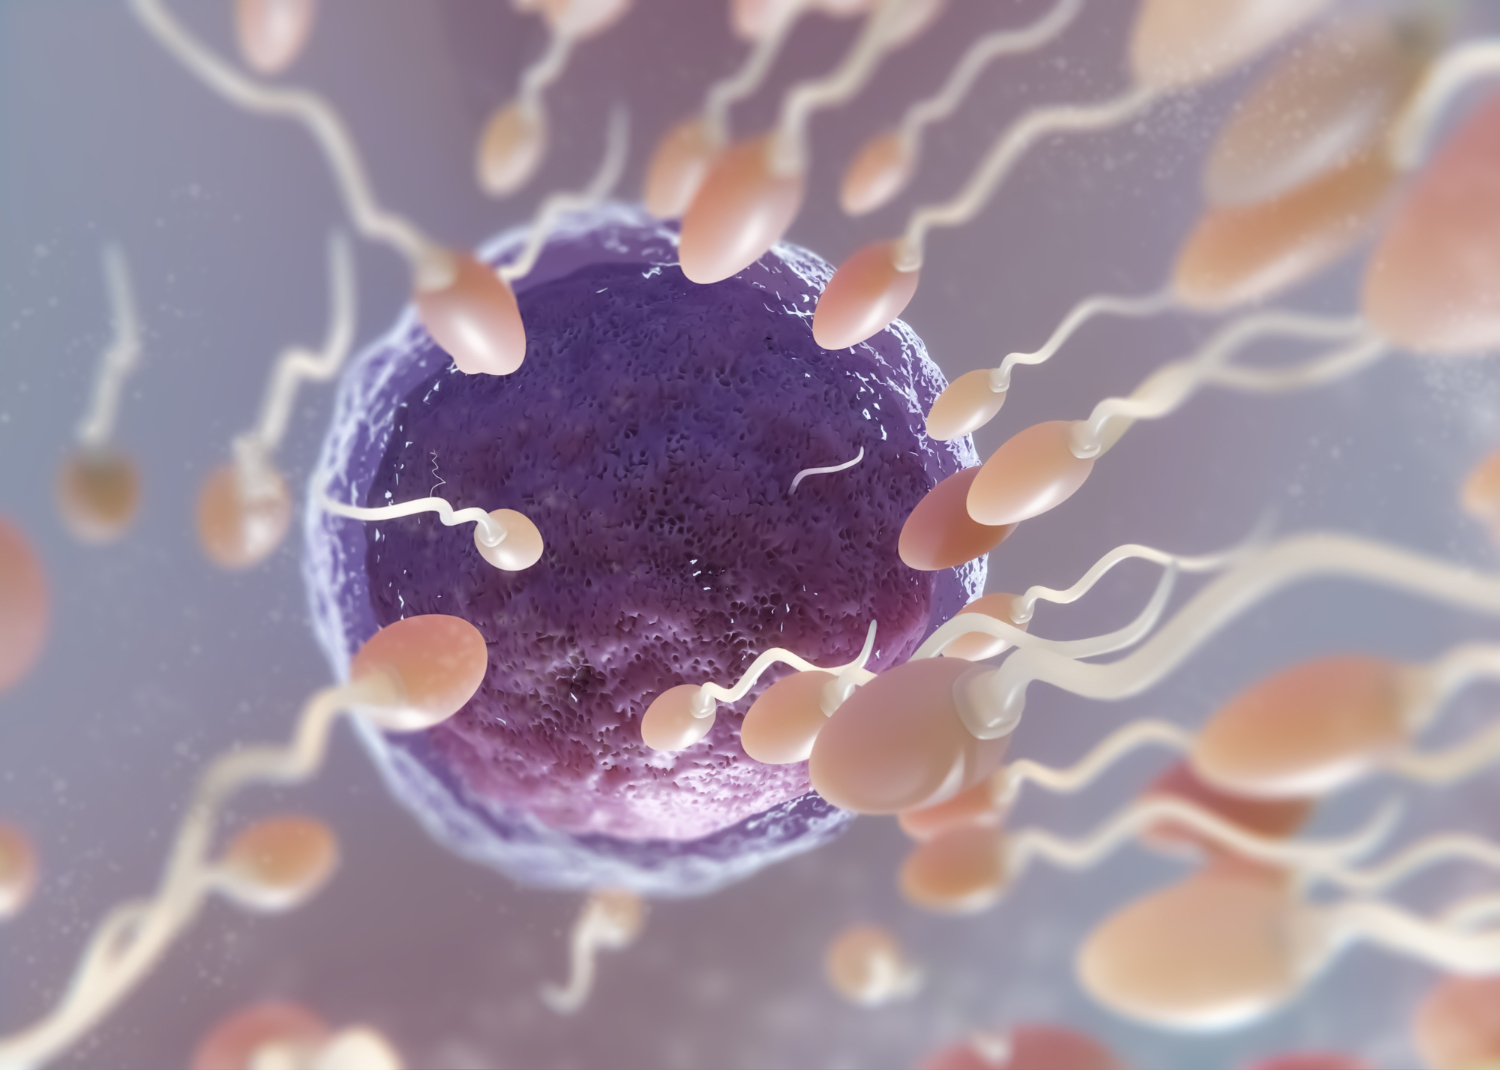 Fases da Espermatogênese Humana - Proliferação, Crescimento, Maturação, Espermiogênese (Imagem: FreePik.com)